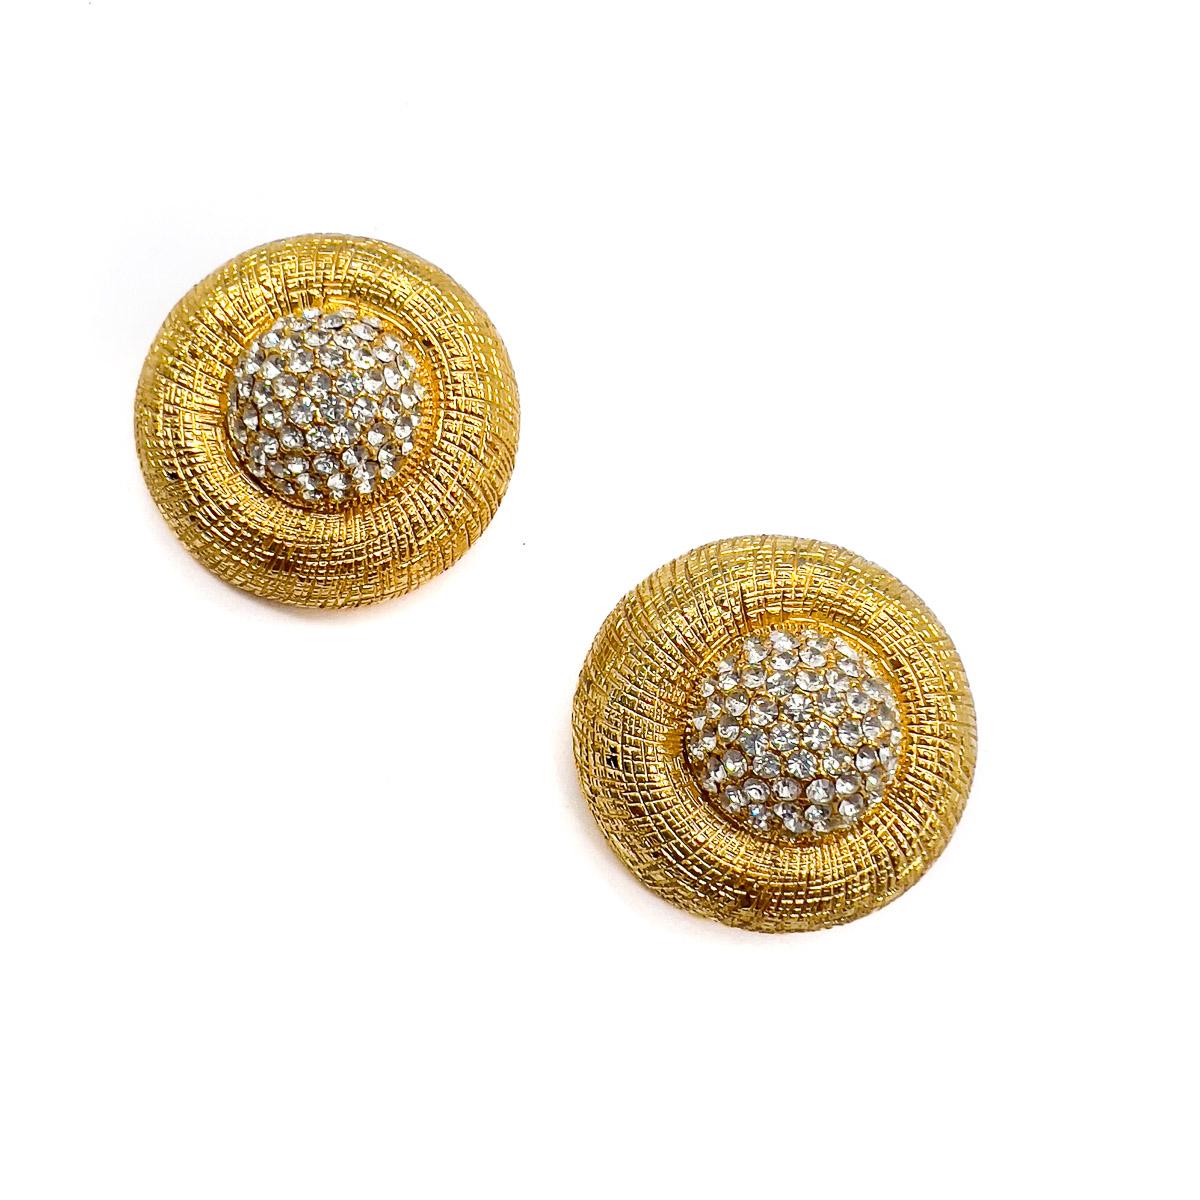 Ein Paar geätzte Goldkristall-Ohrringe im Vintage-Stil. Ein atemberaubender Fund: Glänzende Goldfassungen umschließen Kuppeln in Pflasterkristall, die den ultimativen Stil ausmachen.

Eine unsignierte Schönheit. Ein seltener Schatz. Nur weil ein